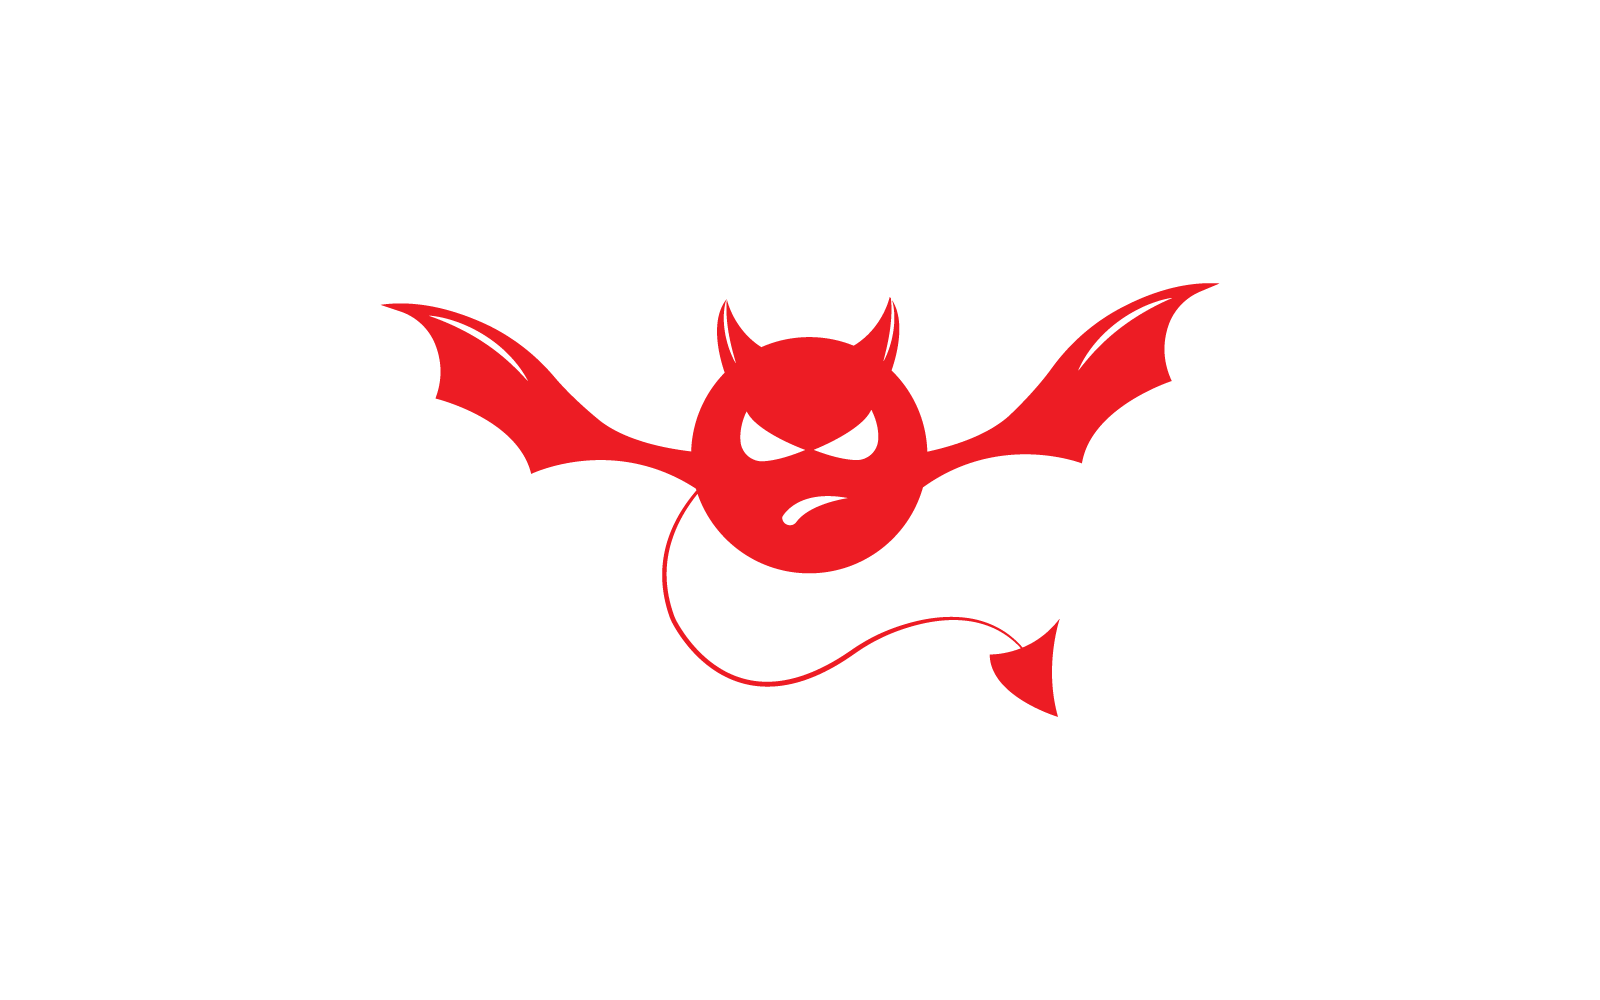 Devil logo illustration flat design template